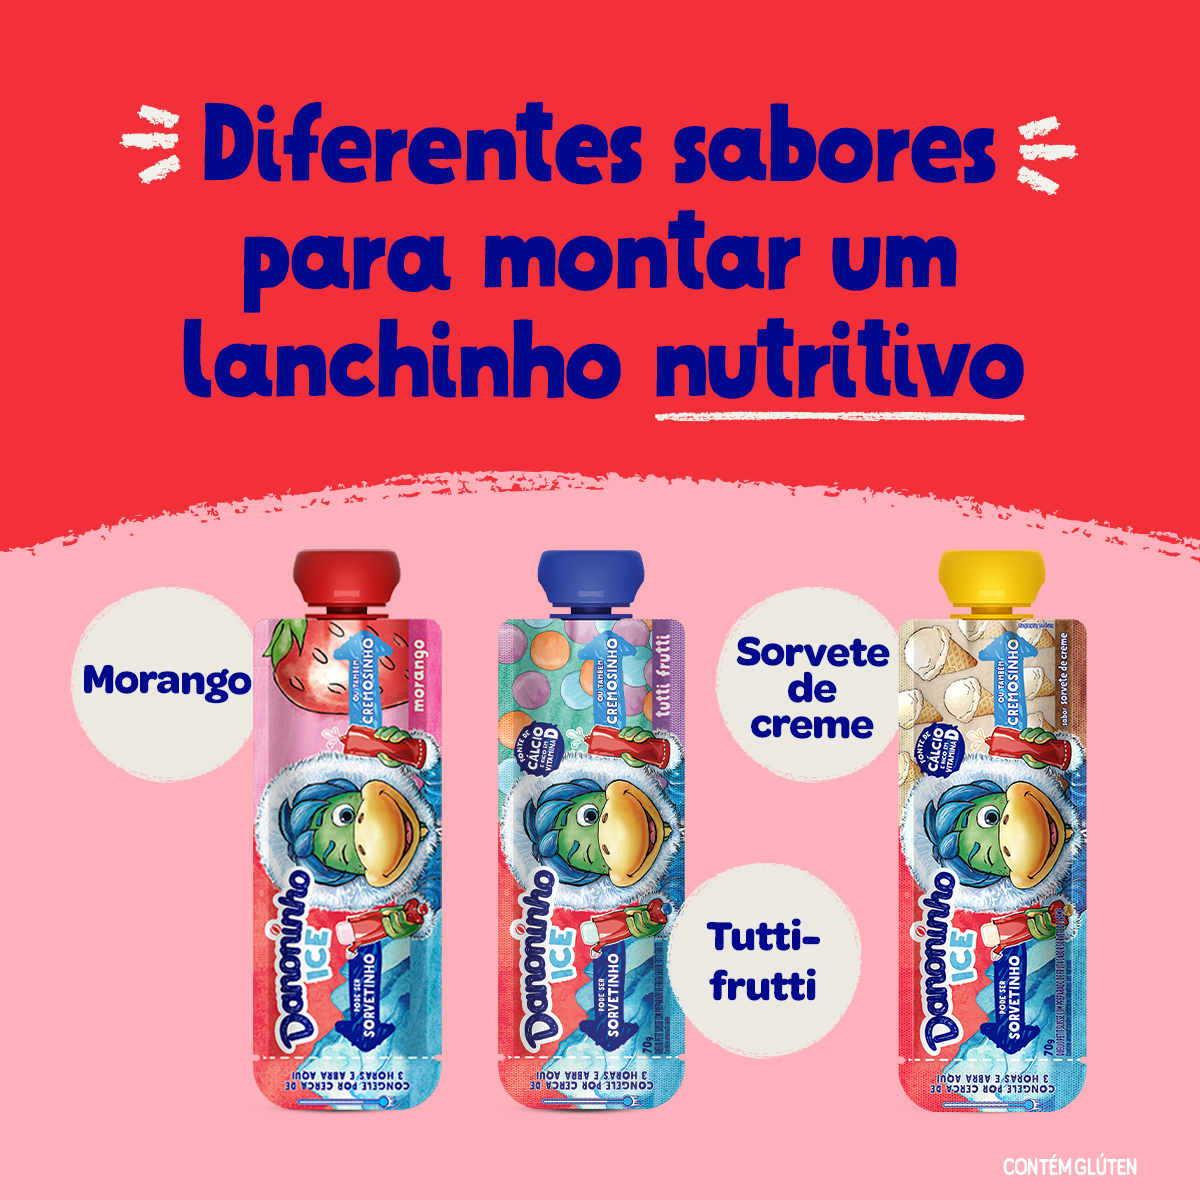 Novos Danoninho ice! 😋🍦 Morango, tutti-frutti, sorvete de creme. 